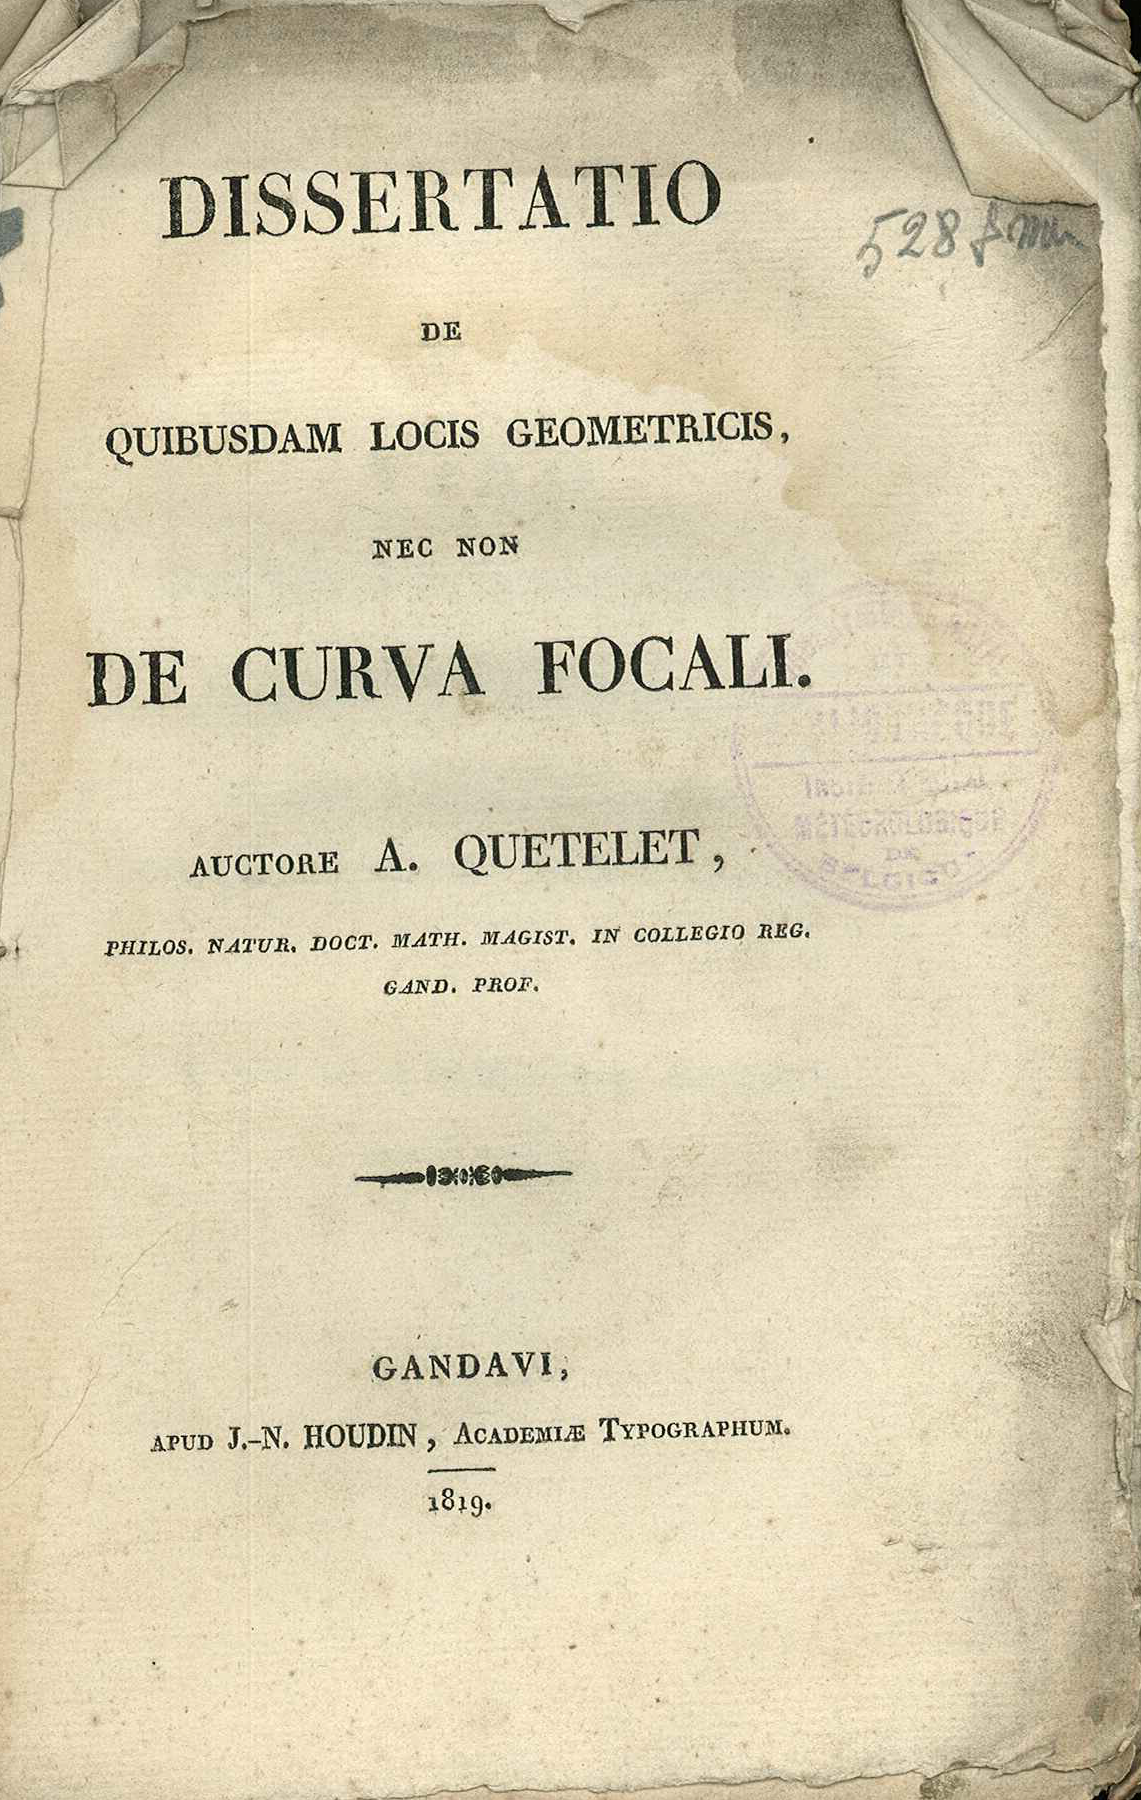 Titelpagina van de doctoraatsscriptie van Adolphe Quetelet verdedigd op de 24e juli 1819 aan de Universiteit te Gent.